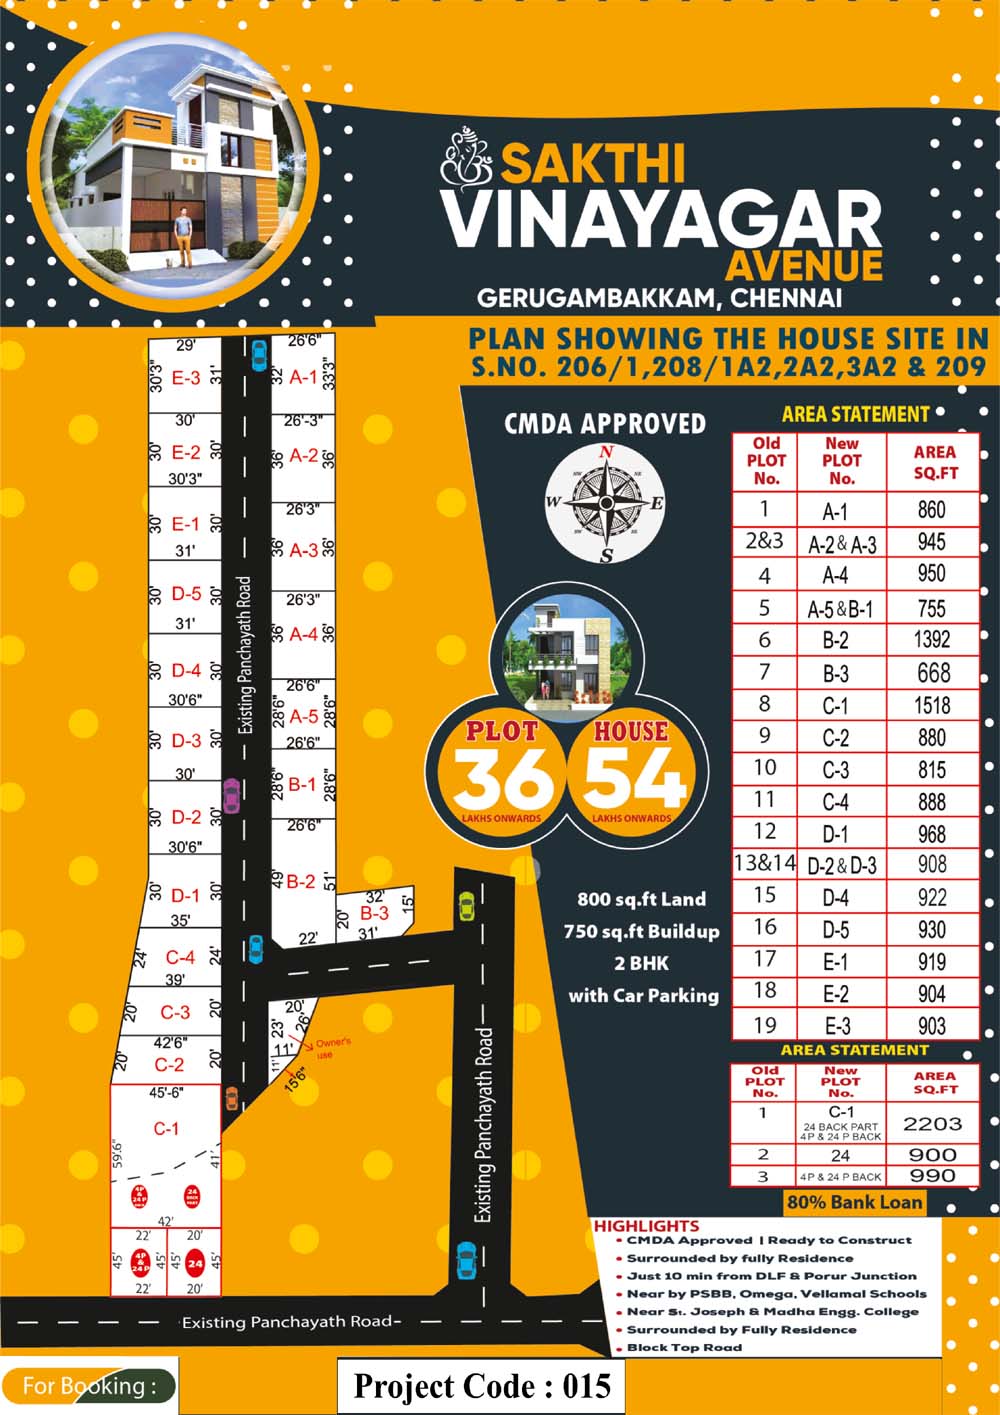 Sakthi Vinayagar Avenue - Gerugambakkam in chennai Layout 1